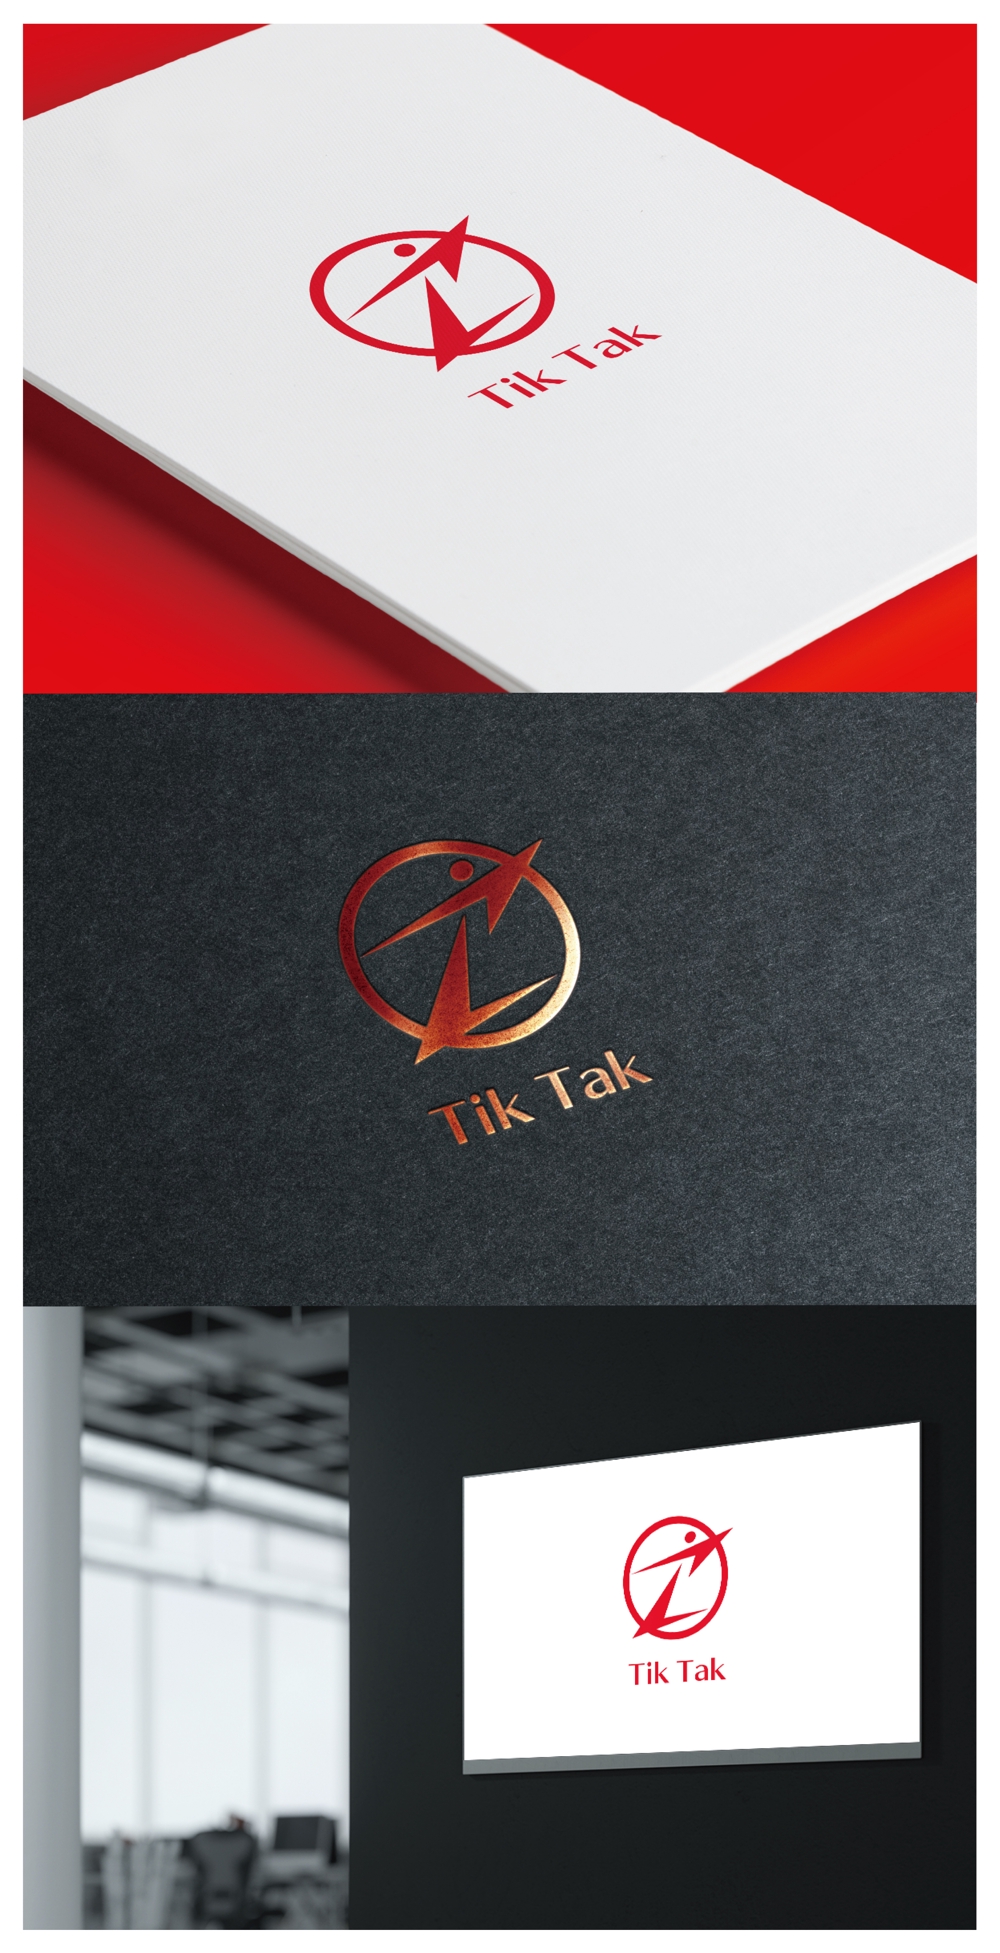 Tik Tak_logo01_01.jpg